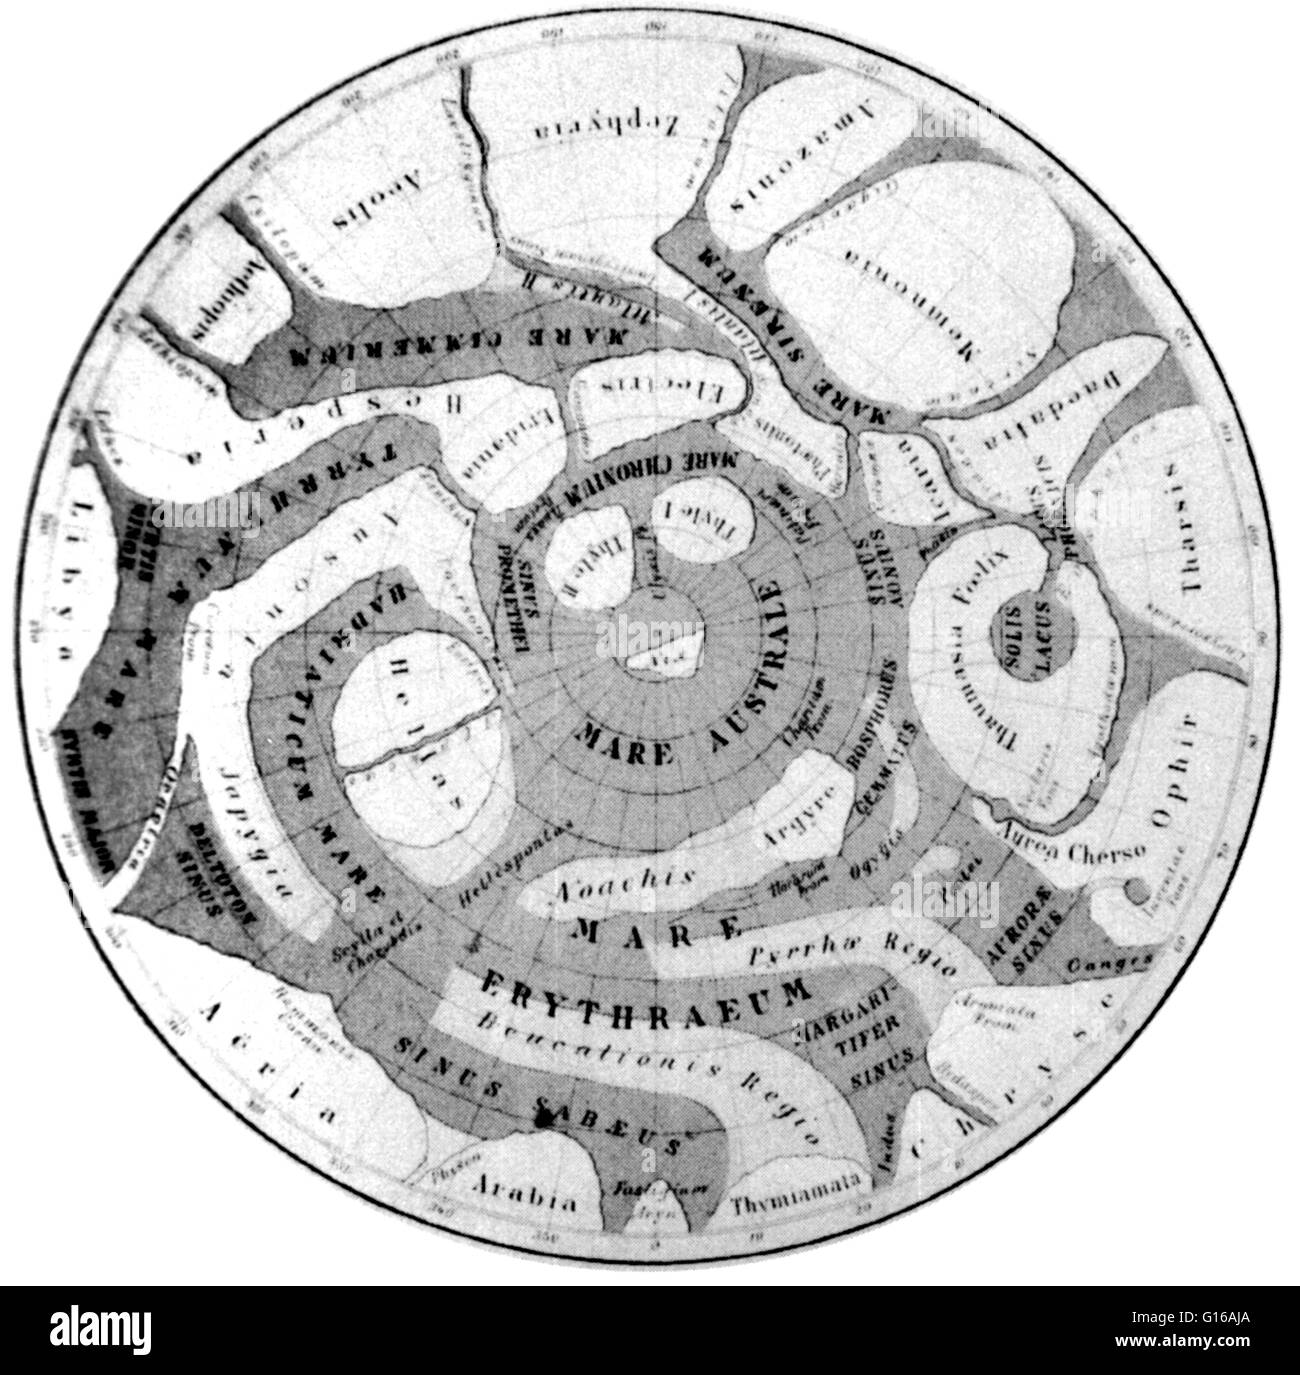 Schiaparelli Mappa Aerographica des Mars, die stereographische Projektion, 1877-78. Giovanni Virginio Schiaparelli (1835-1910) war ein italienischer Astronom und Wissenschaft Historiker. Im Jahr 1888 kündigte Schiaparelli die Entdeckung eines Netzes von engen Linien auf dem Mars, w Stockfoto